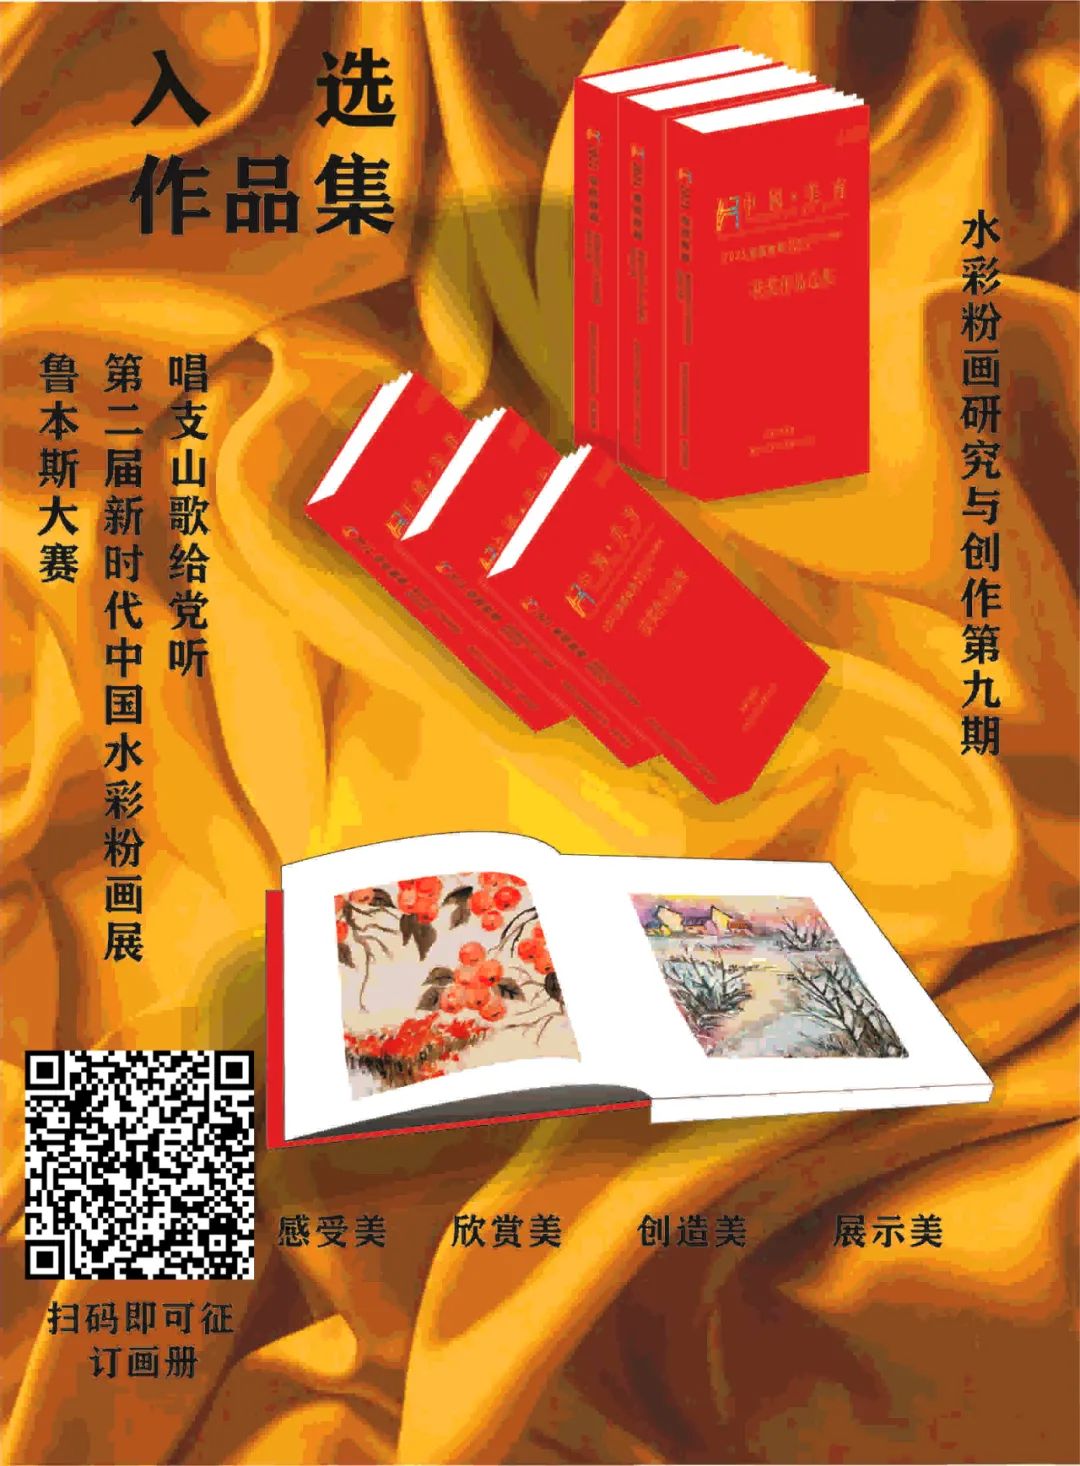 踔厉奋发·2022中国水彩粉画年度学术展征稿通知 | 百名特邀艺术家领衔(图10)